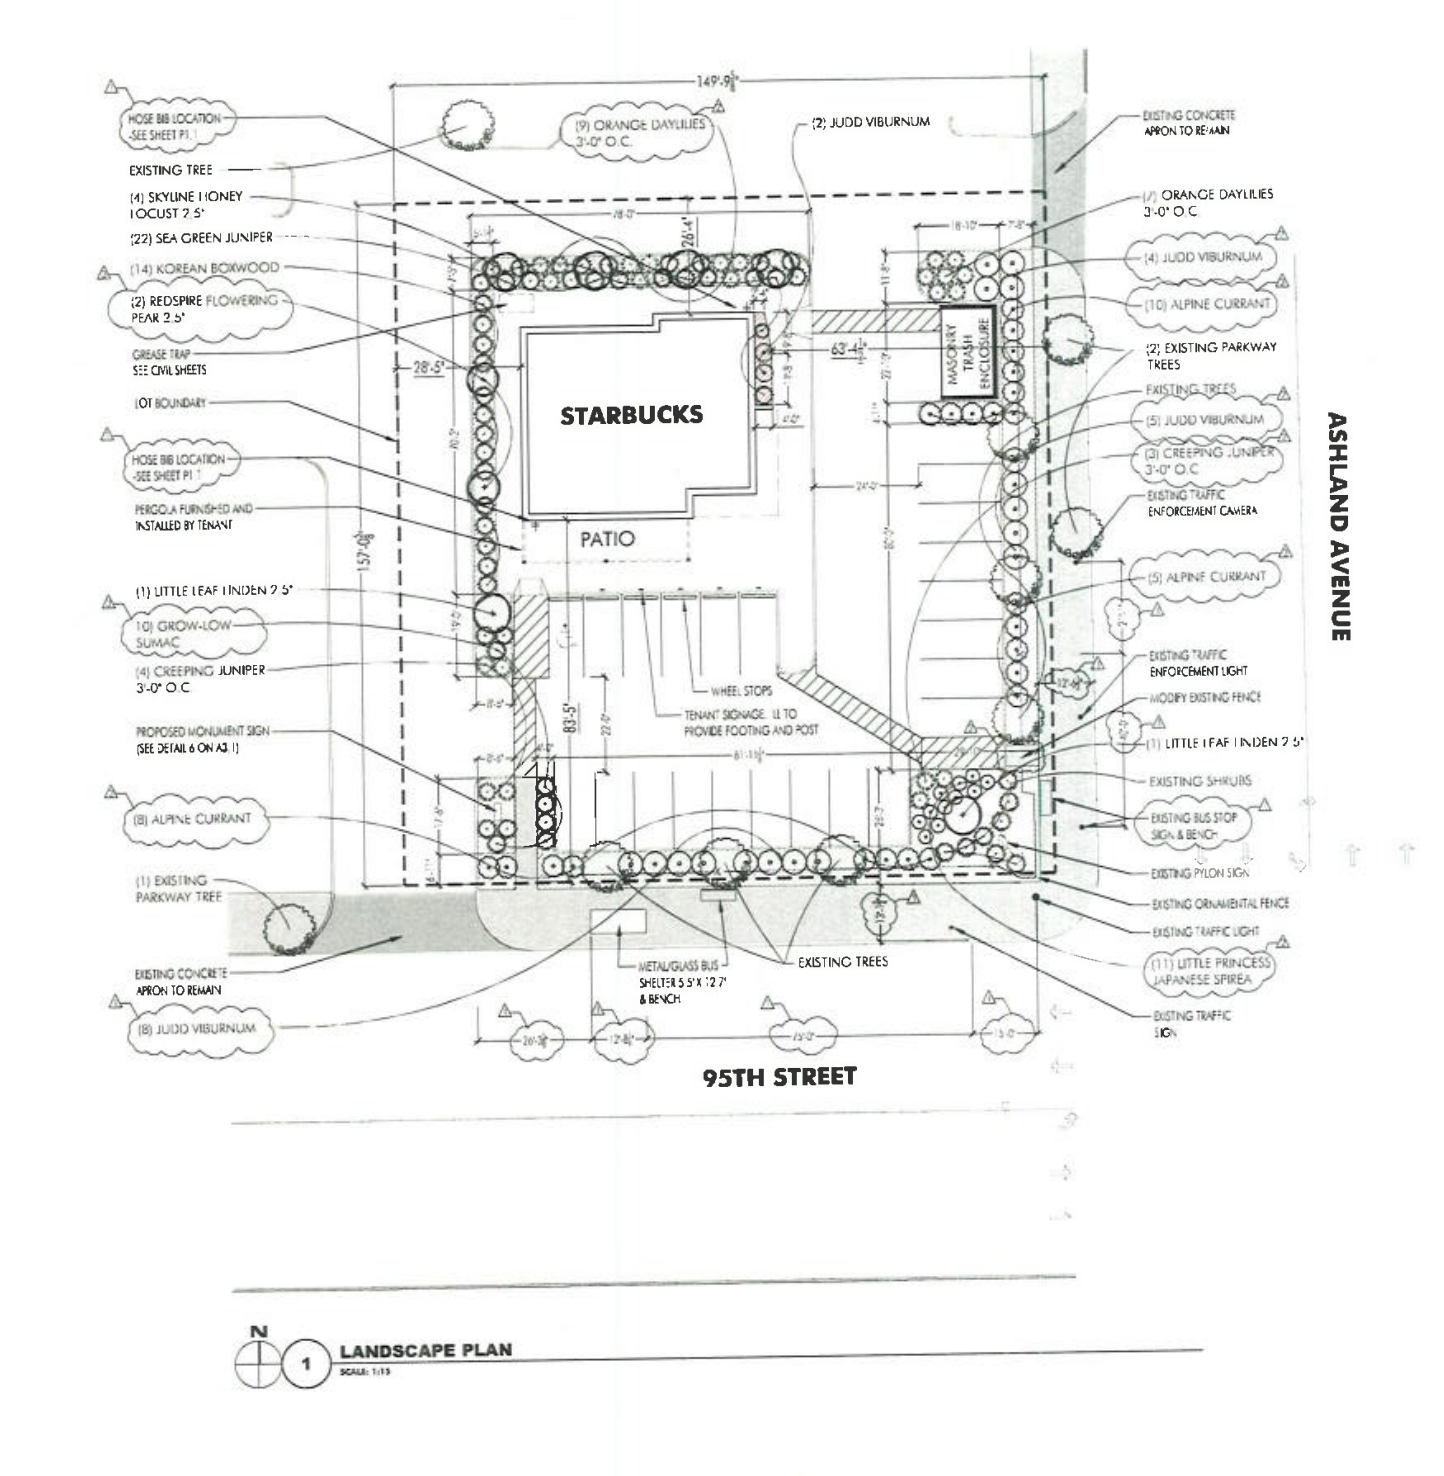 9438 S Ashland Avenue landscape plan